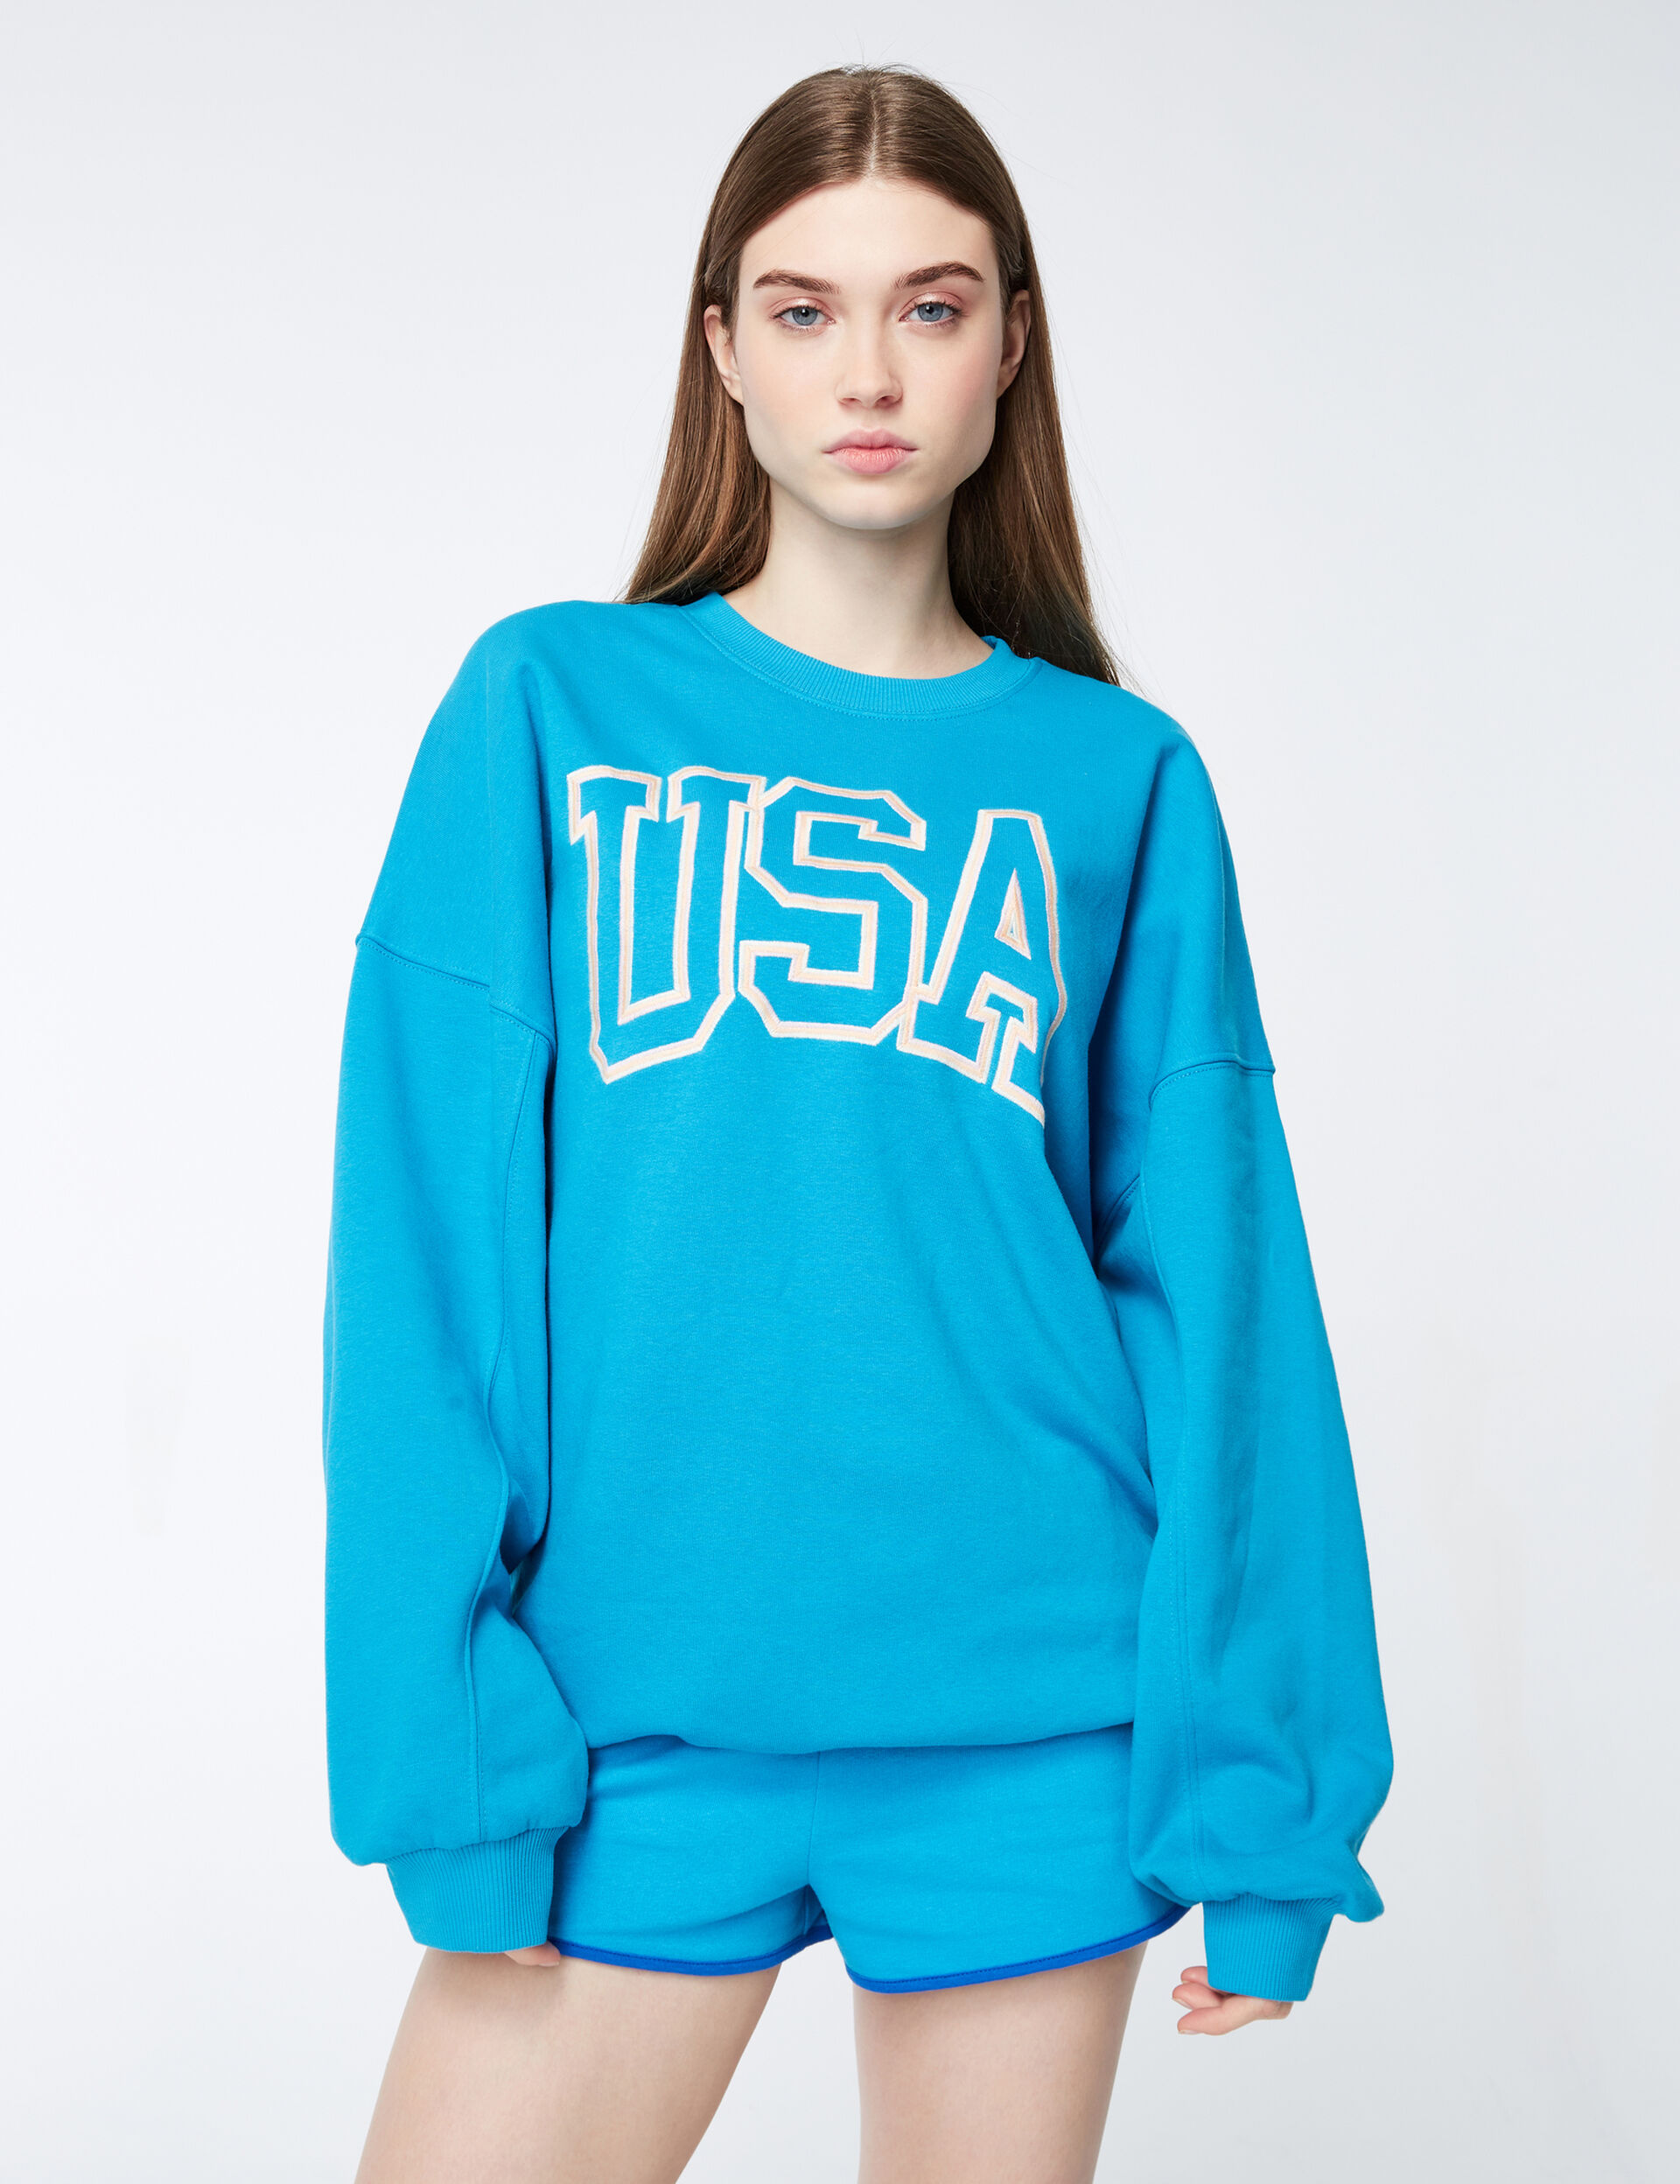 USA oversized sweatshirt